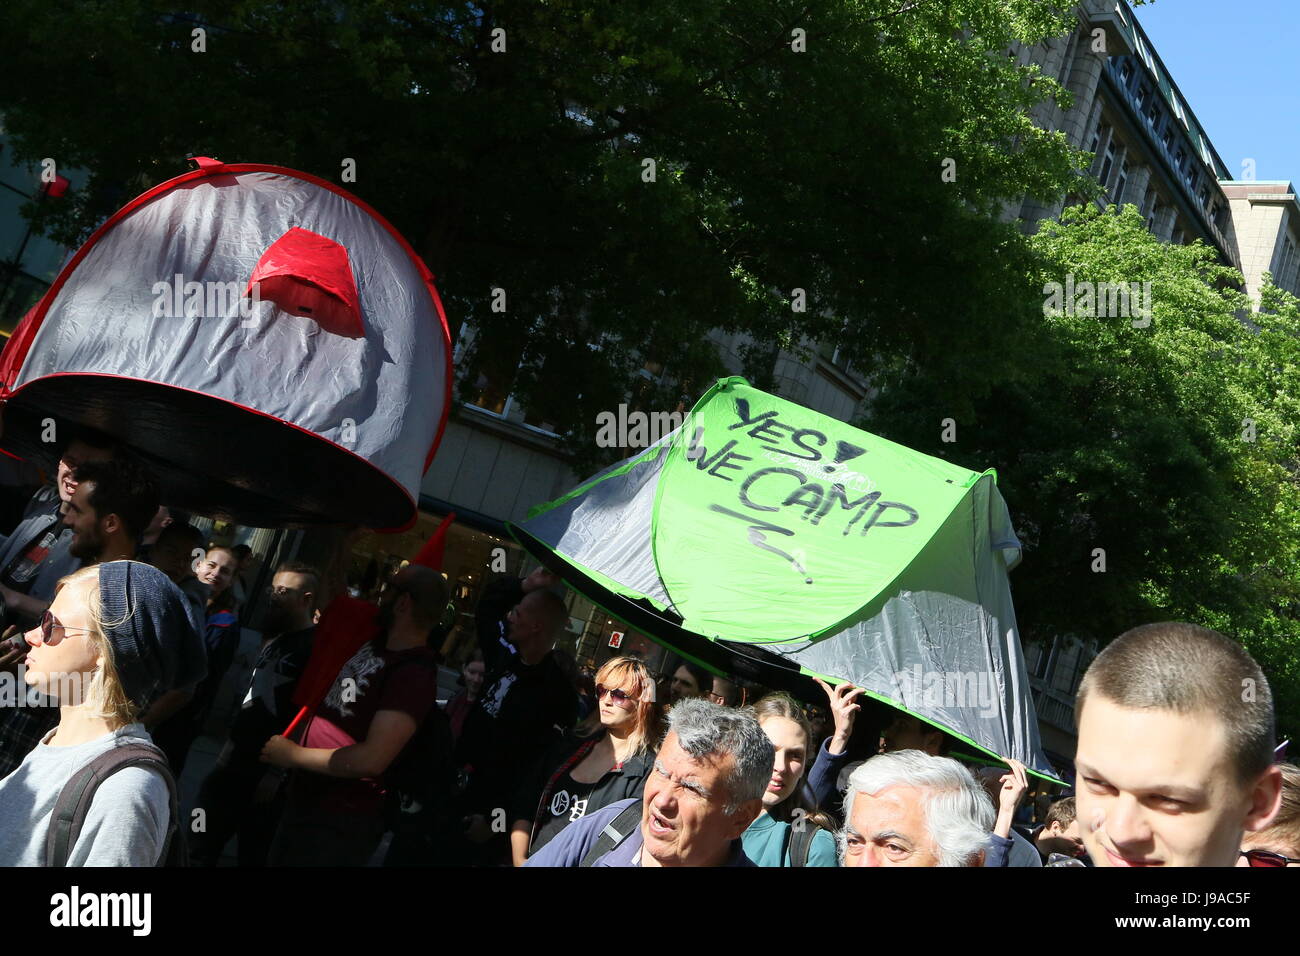 Hamburg, Deutschland, 31. Mai 2017. Die Demonstranten tragen ein Zelt mit der Aufschrift "Ja Zelten wir" während einer Demonstration gegen den G20-Gipfel an der Mönckebergstraße, Hamburg, Germany, 31.05.2017 statt. Bildnachweis: Christopher Tamcke/AlamyLiveNews Stockfoto